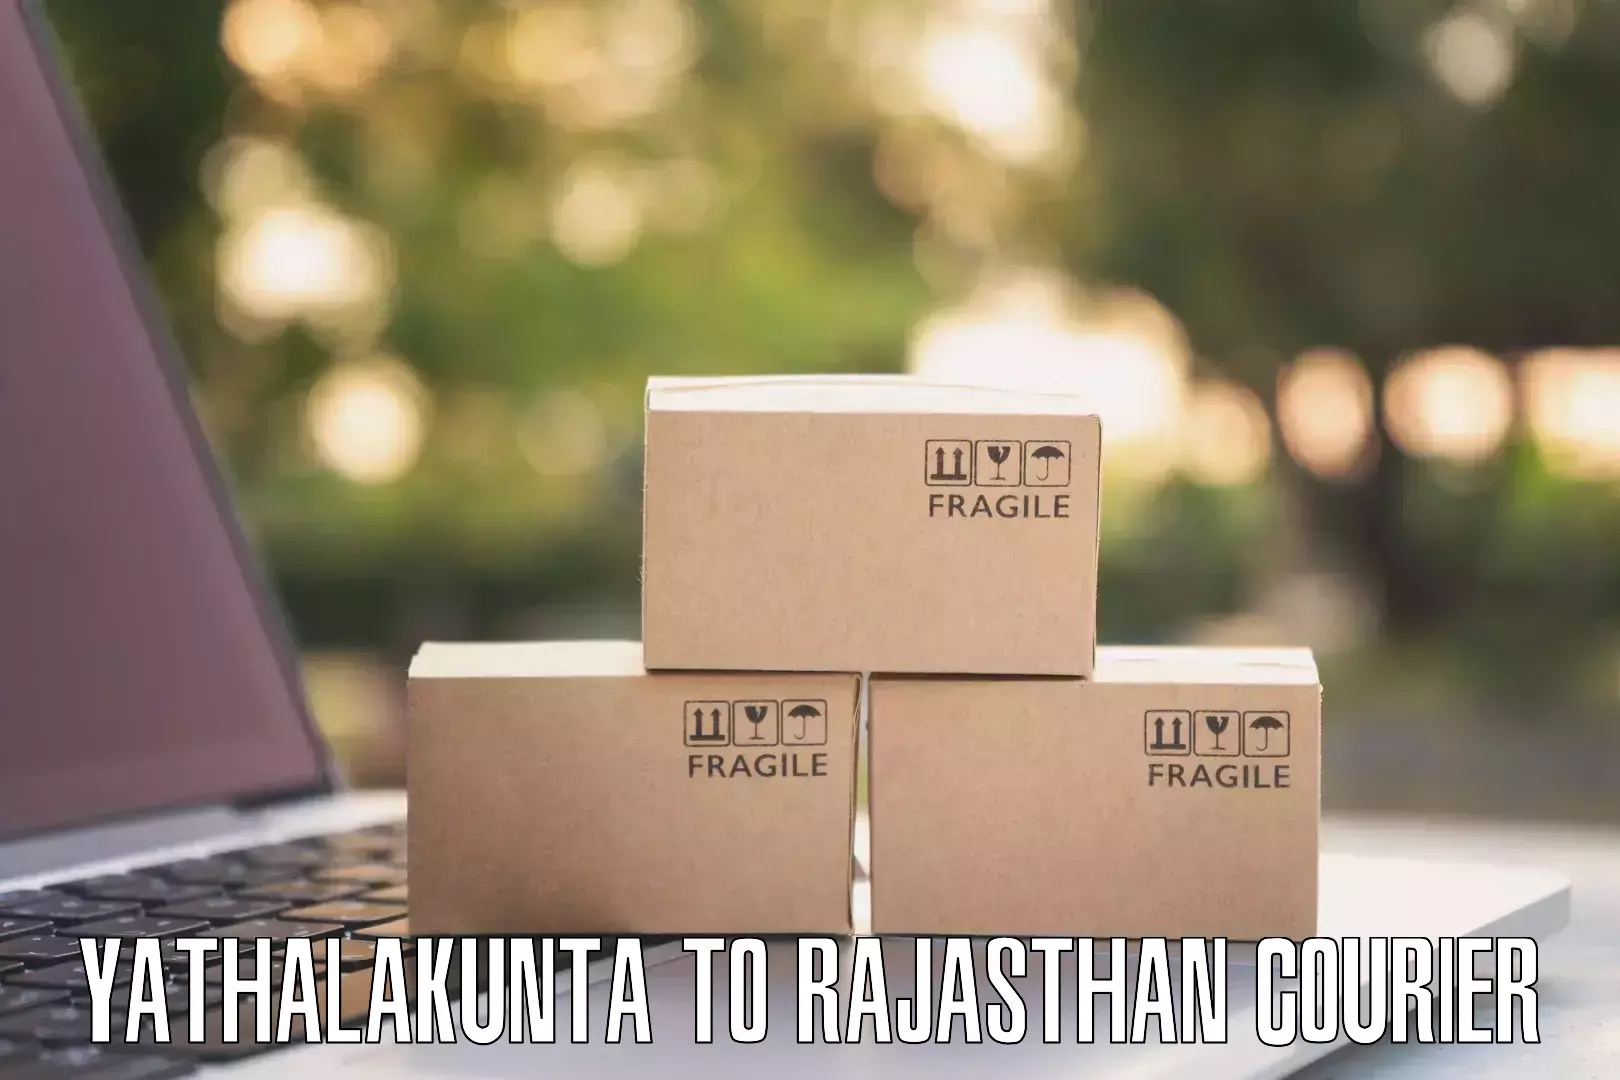 Commercial shipping rates Yathalakunta to Nasirabad